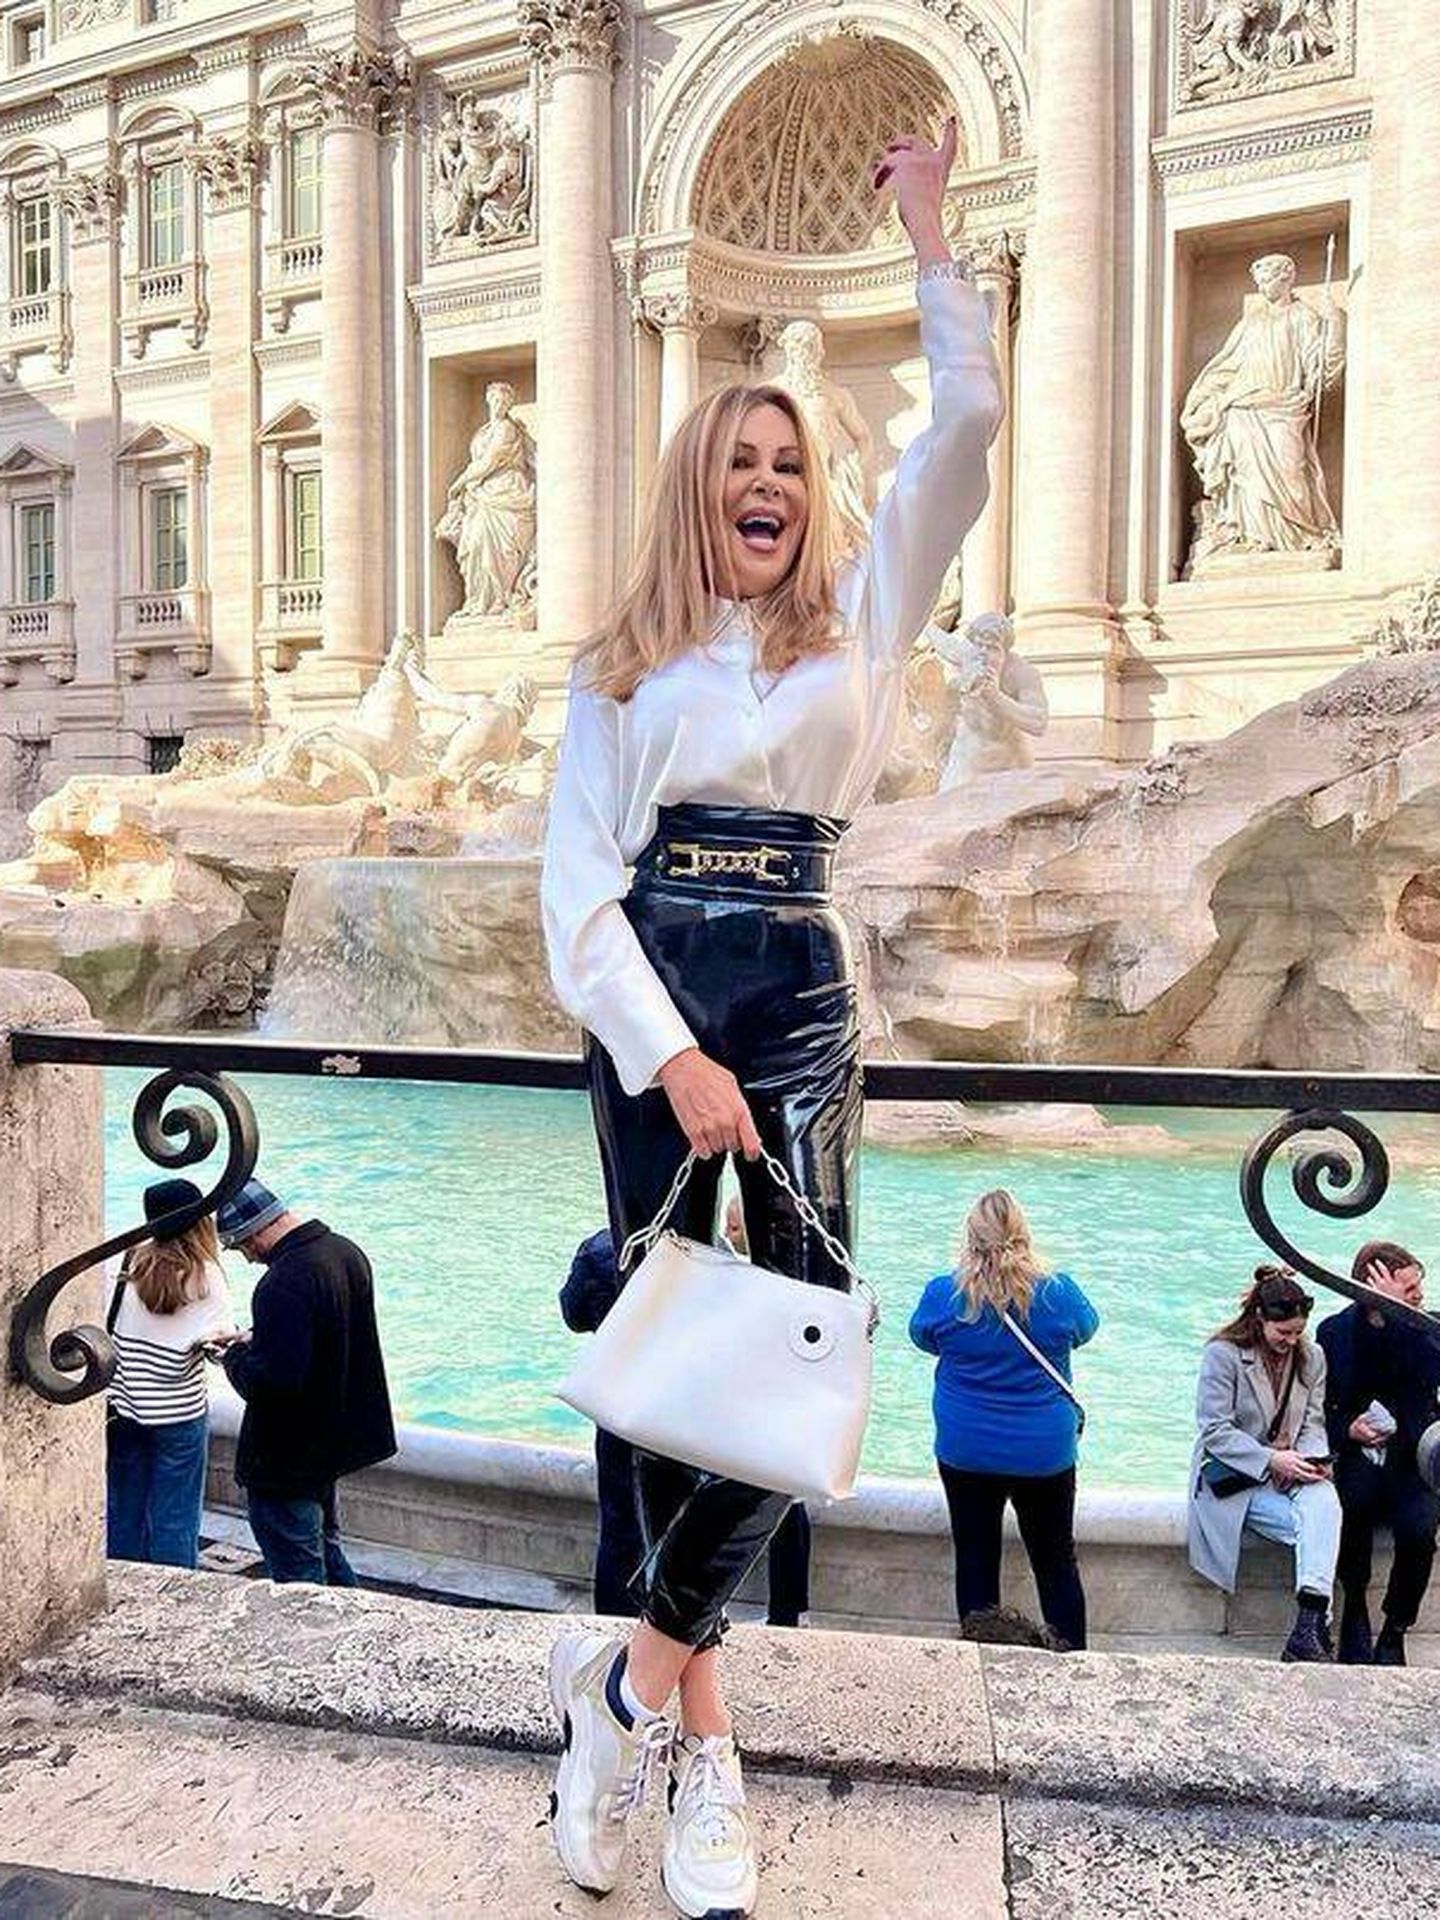 La presentadora y actriz pidiendo un deseo en la Fontana di Trevi. (Instagram/@ana_obregon_oficial)